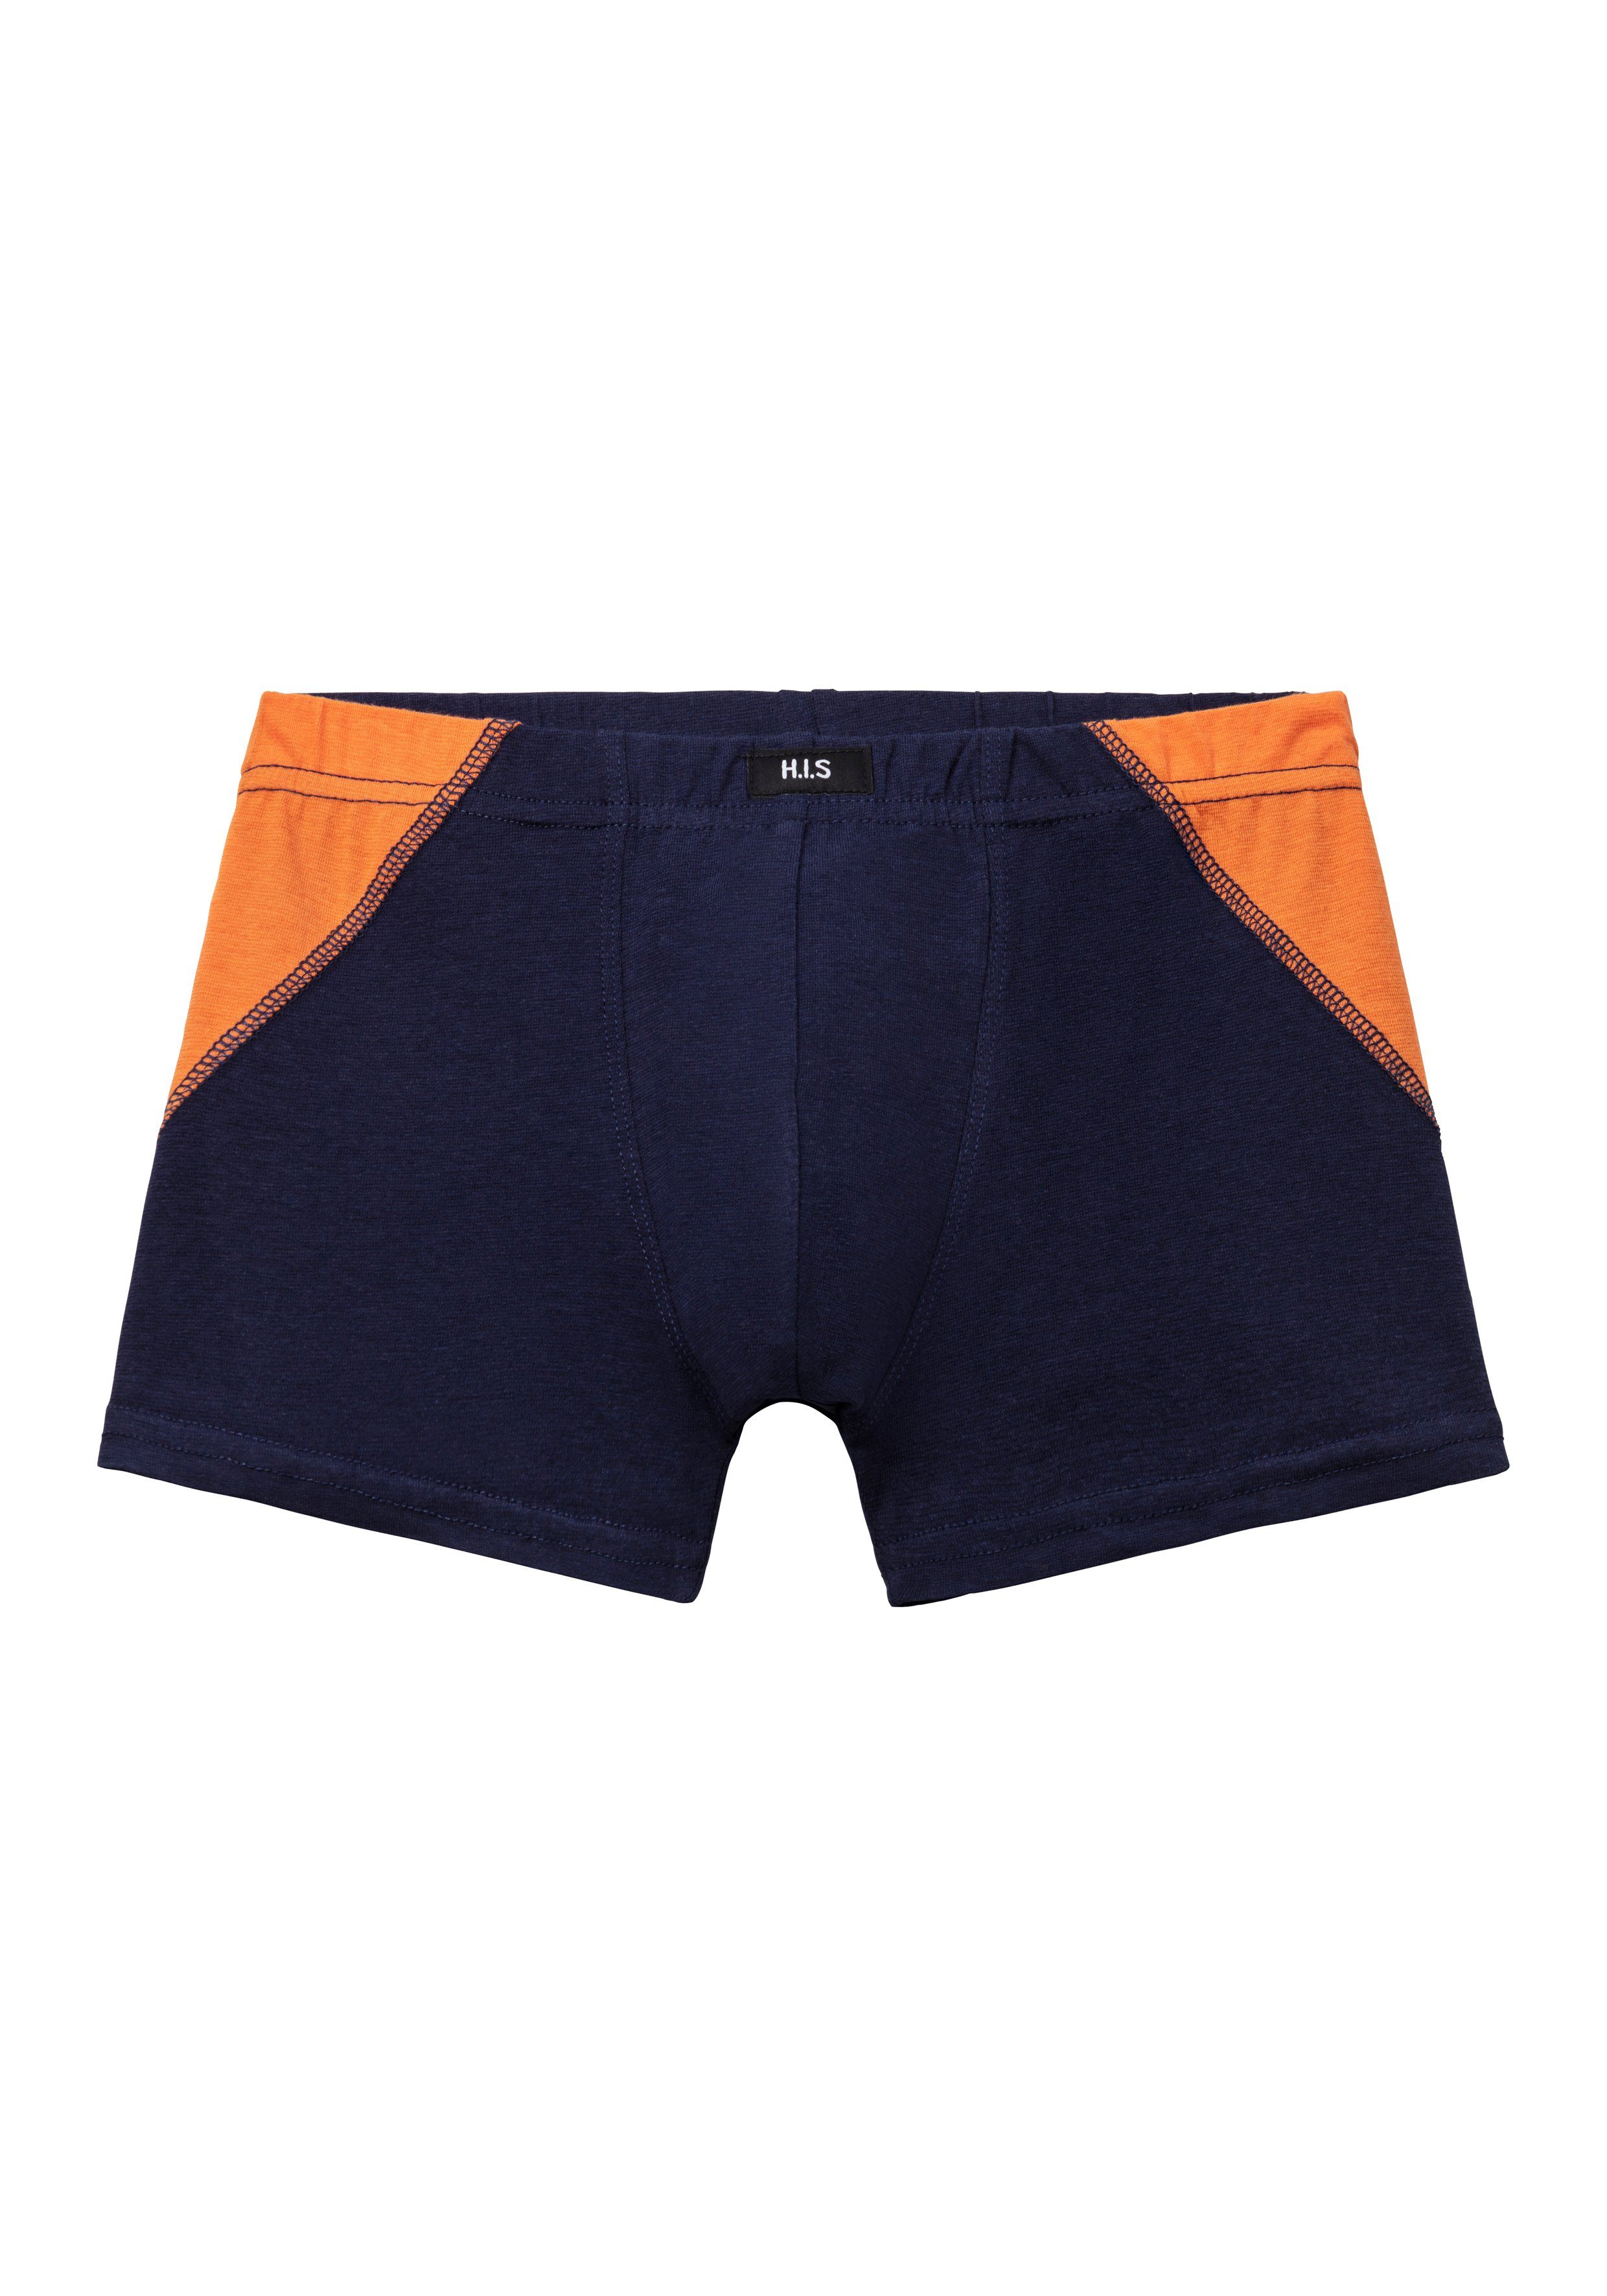 4-St) marine-blau, marine-orange für einen (Packung, mit orange-marine, Auftritt coolem H.I.S blau-marine, sportlichen Boxer Colorblocking